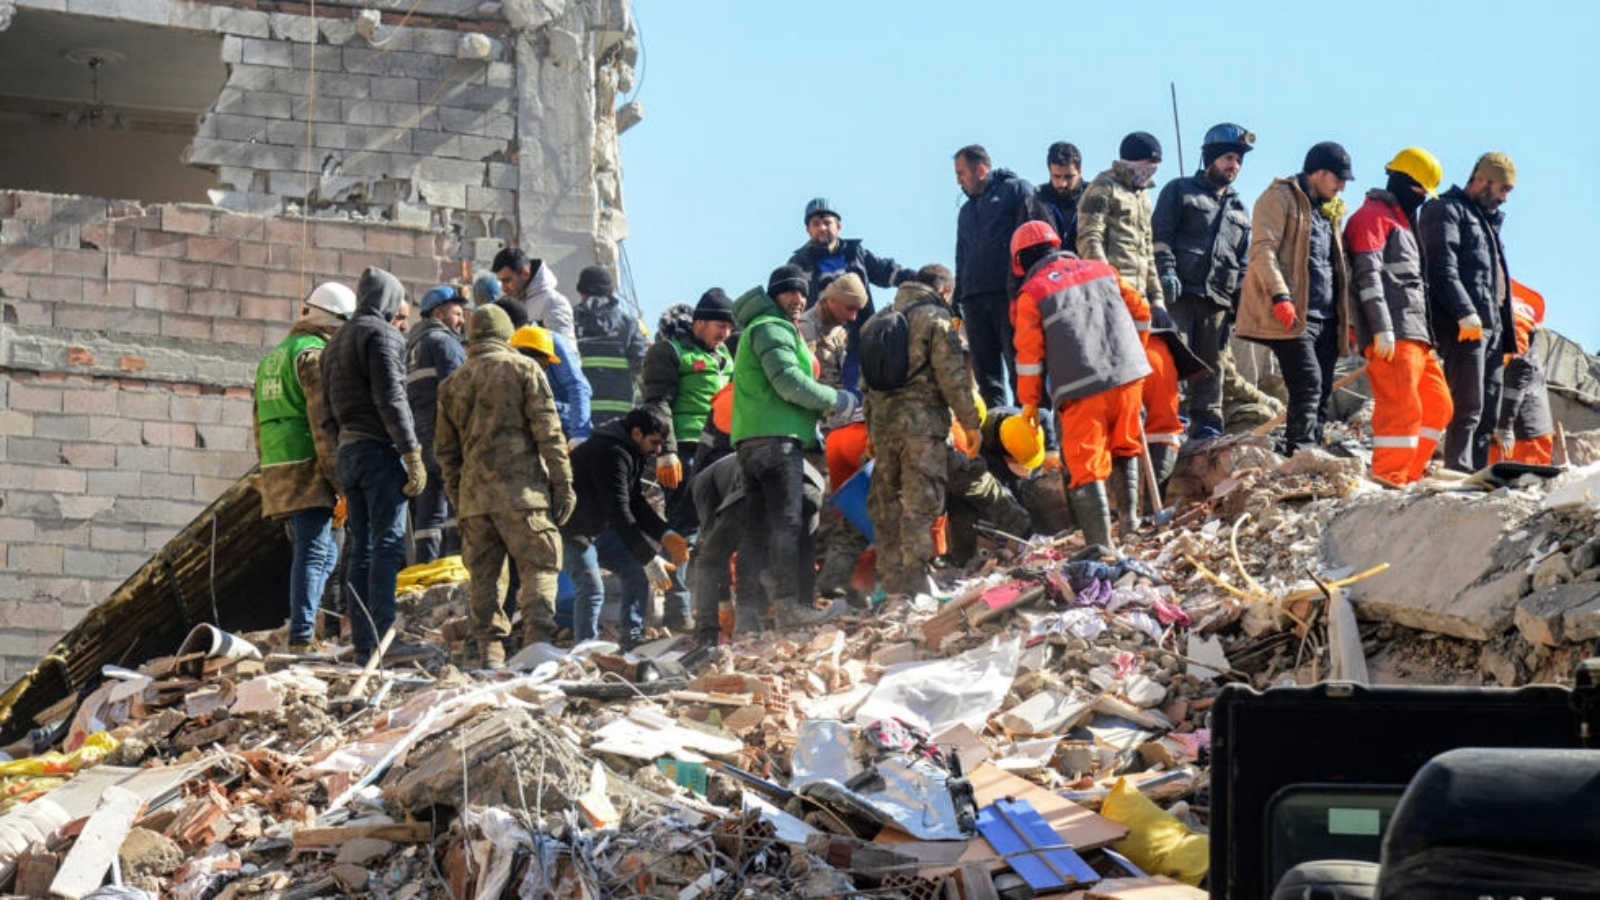 عمال انقاذ يبحثون عن ناجين بني انقاض ابنية منهارة بعد ثلاثة أيام على زلزال عنيف، في التاسع من فبراير 2023 في أديامان في تركيا 